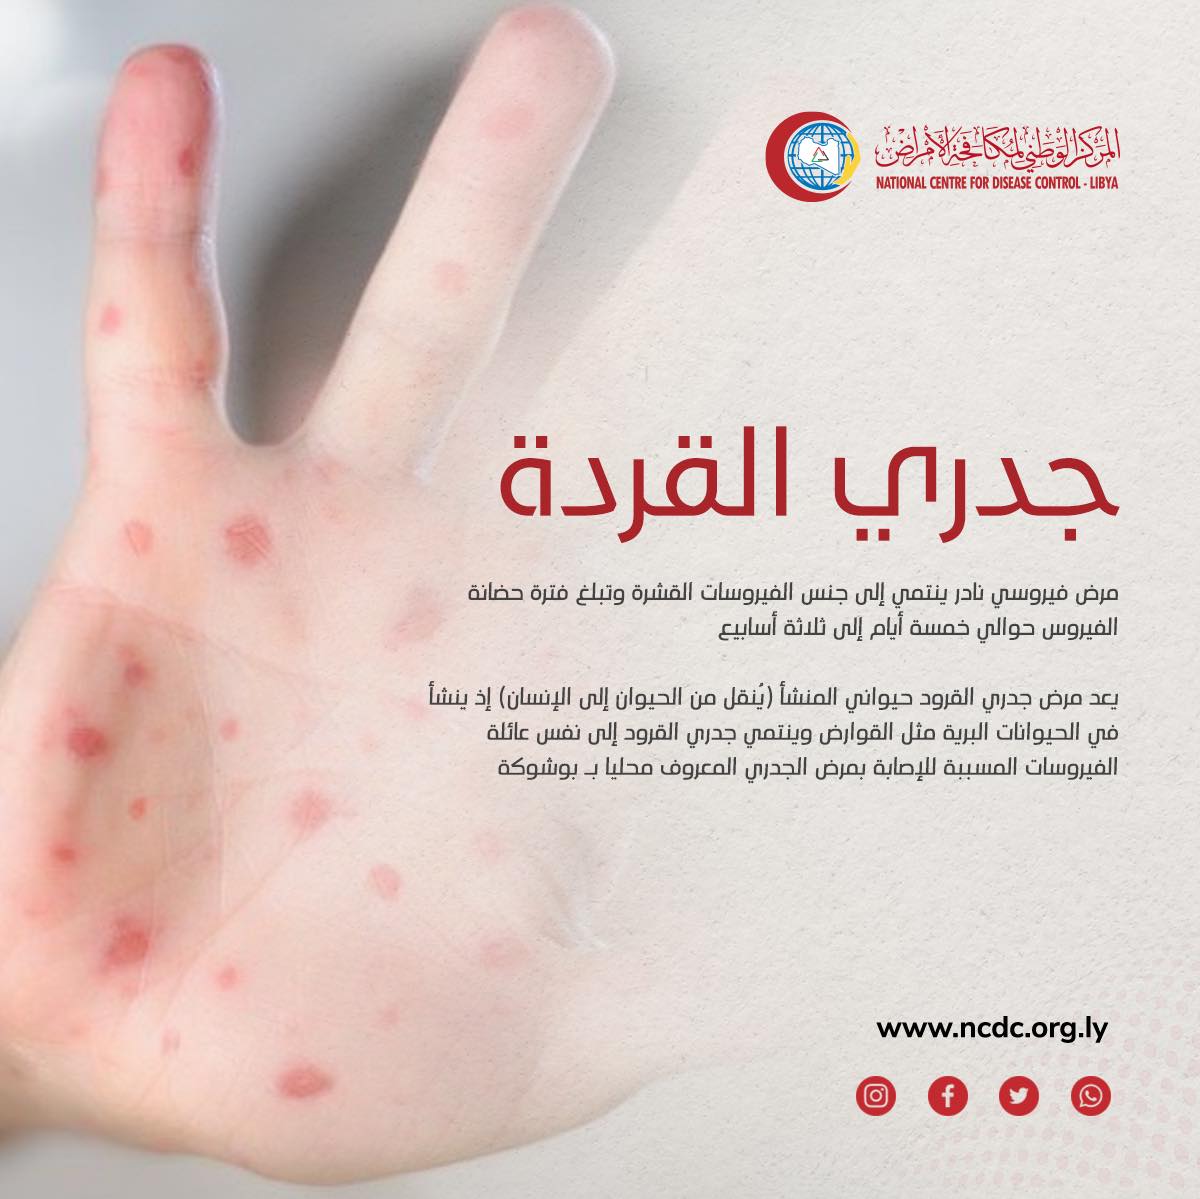 Le CNCM confirme que le pays est exempt de toute infection par le virus monkeypox.